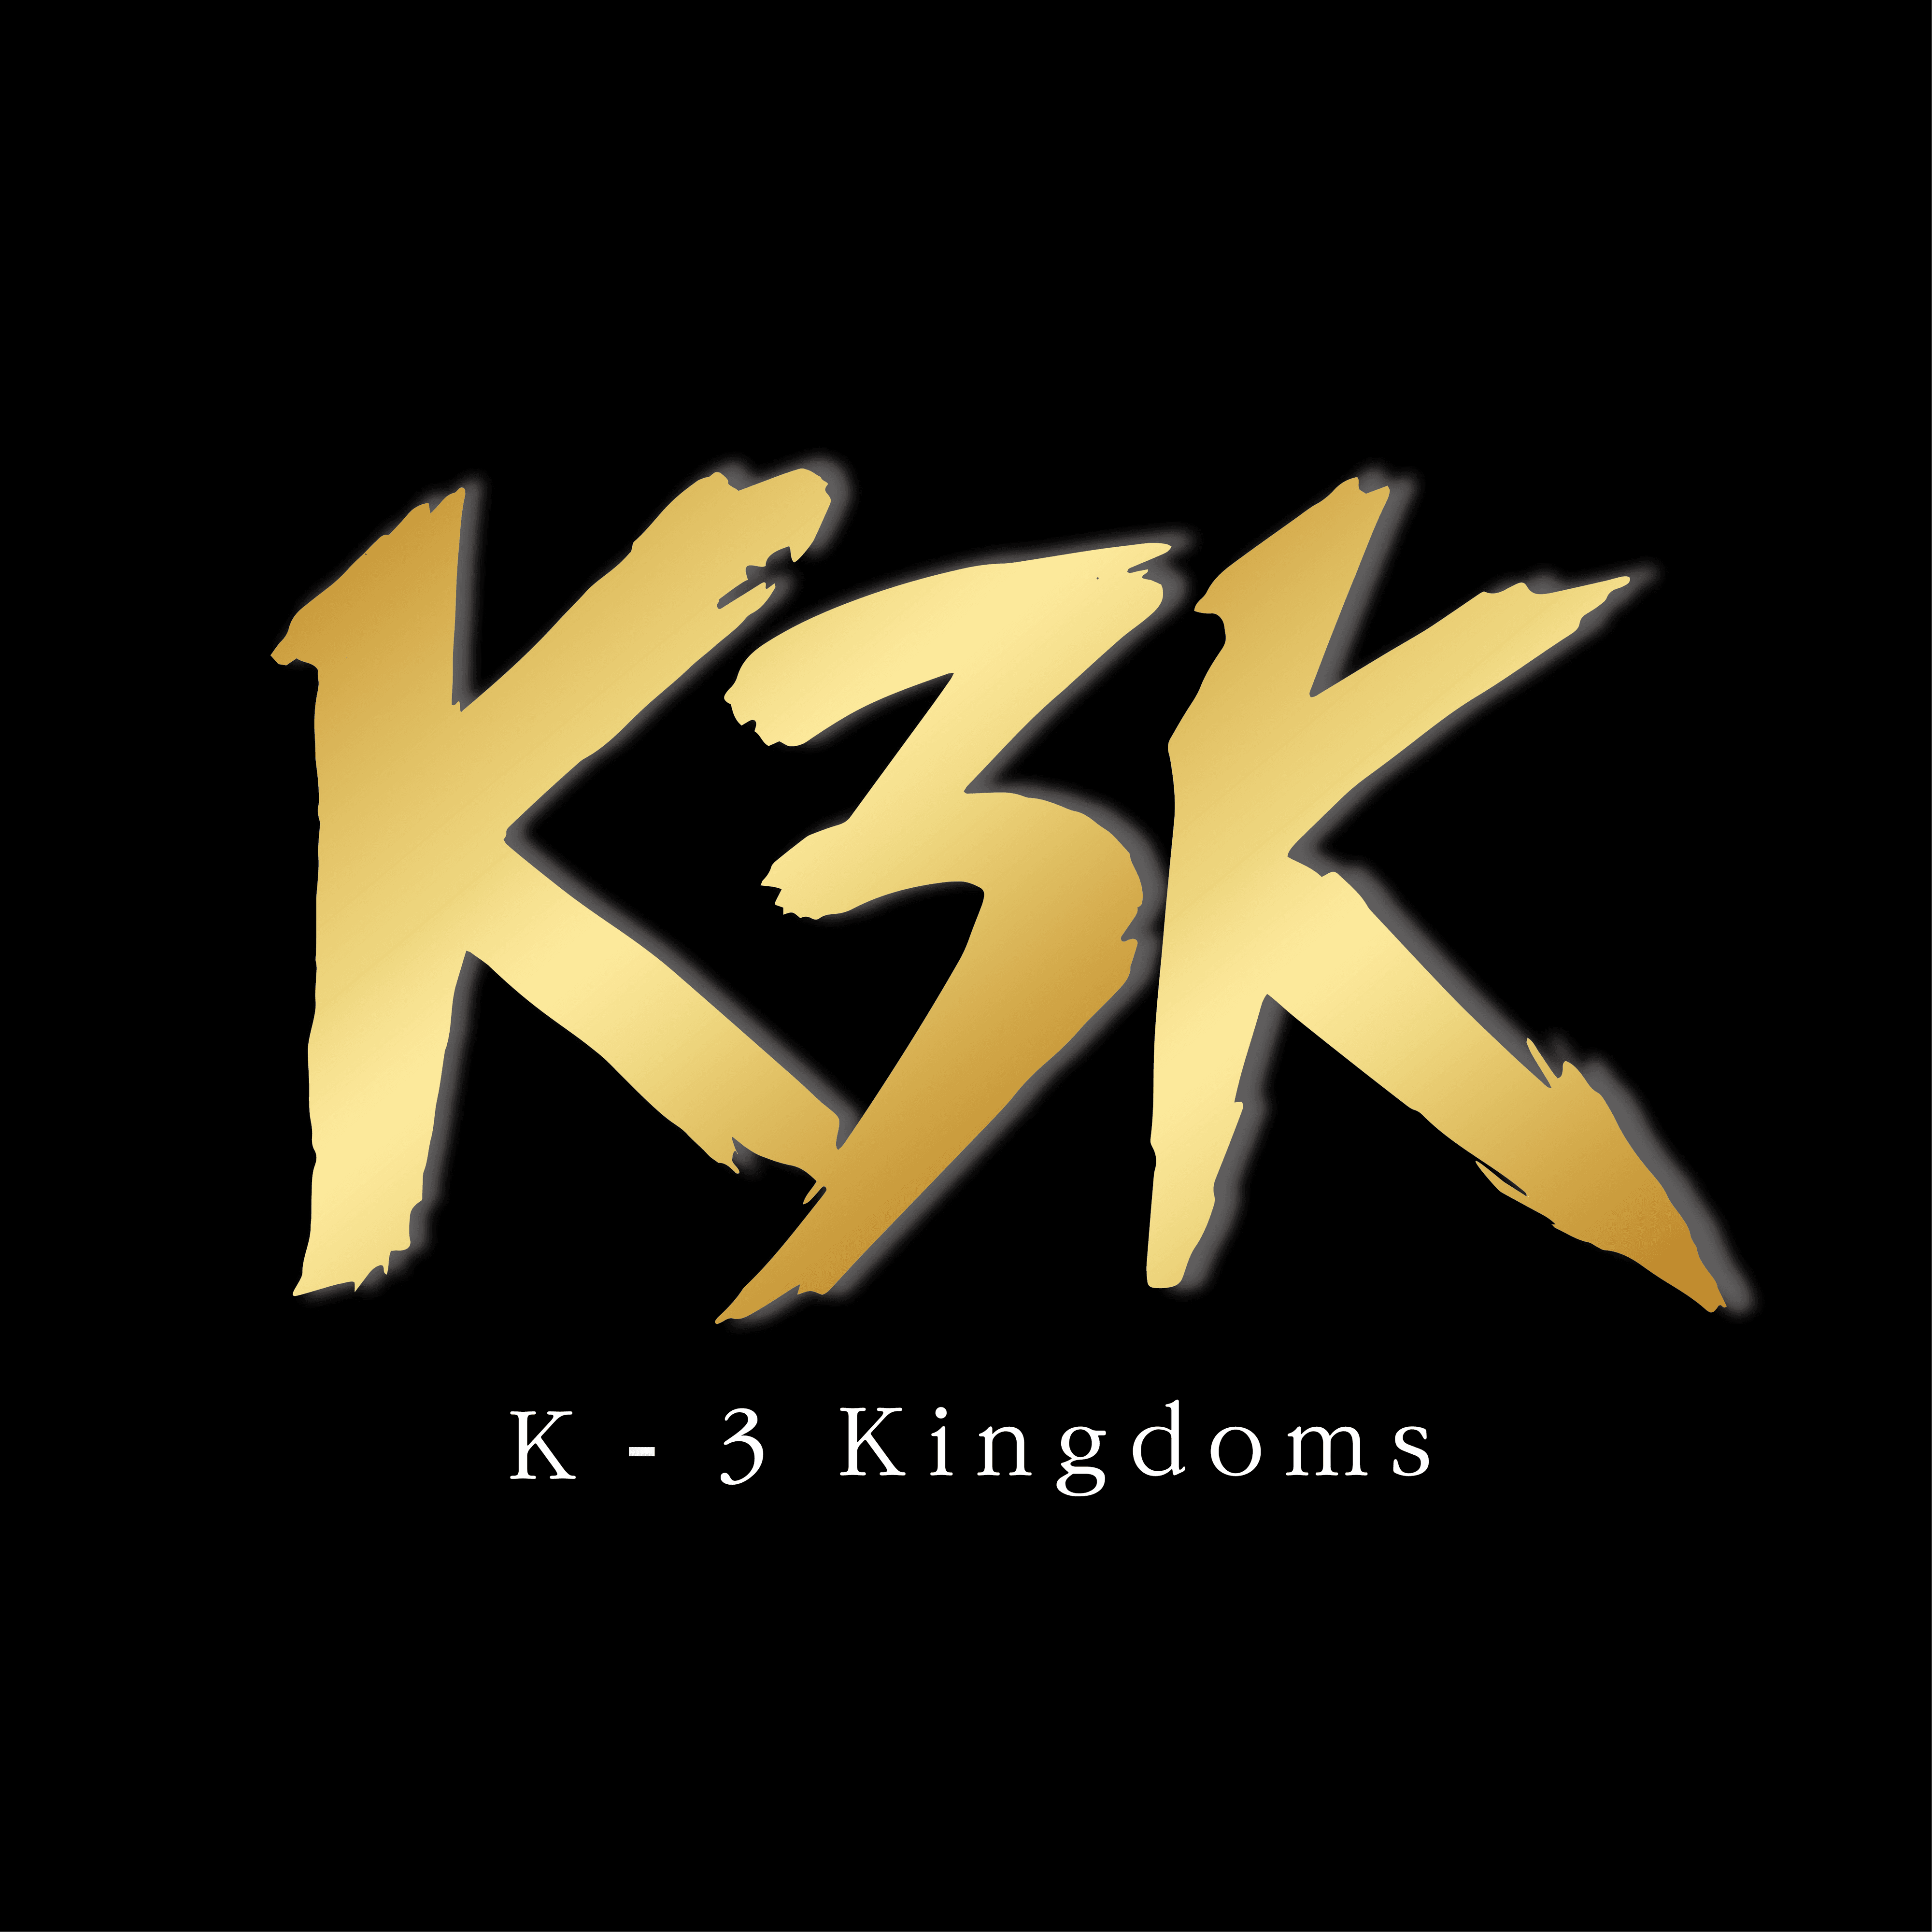 K3K